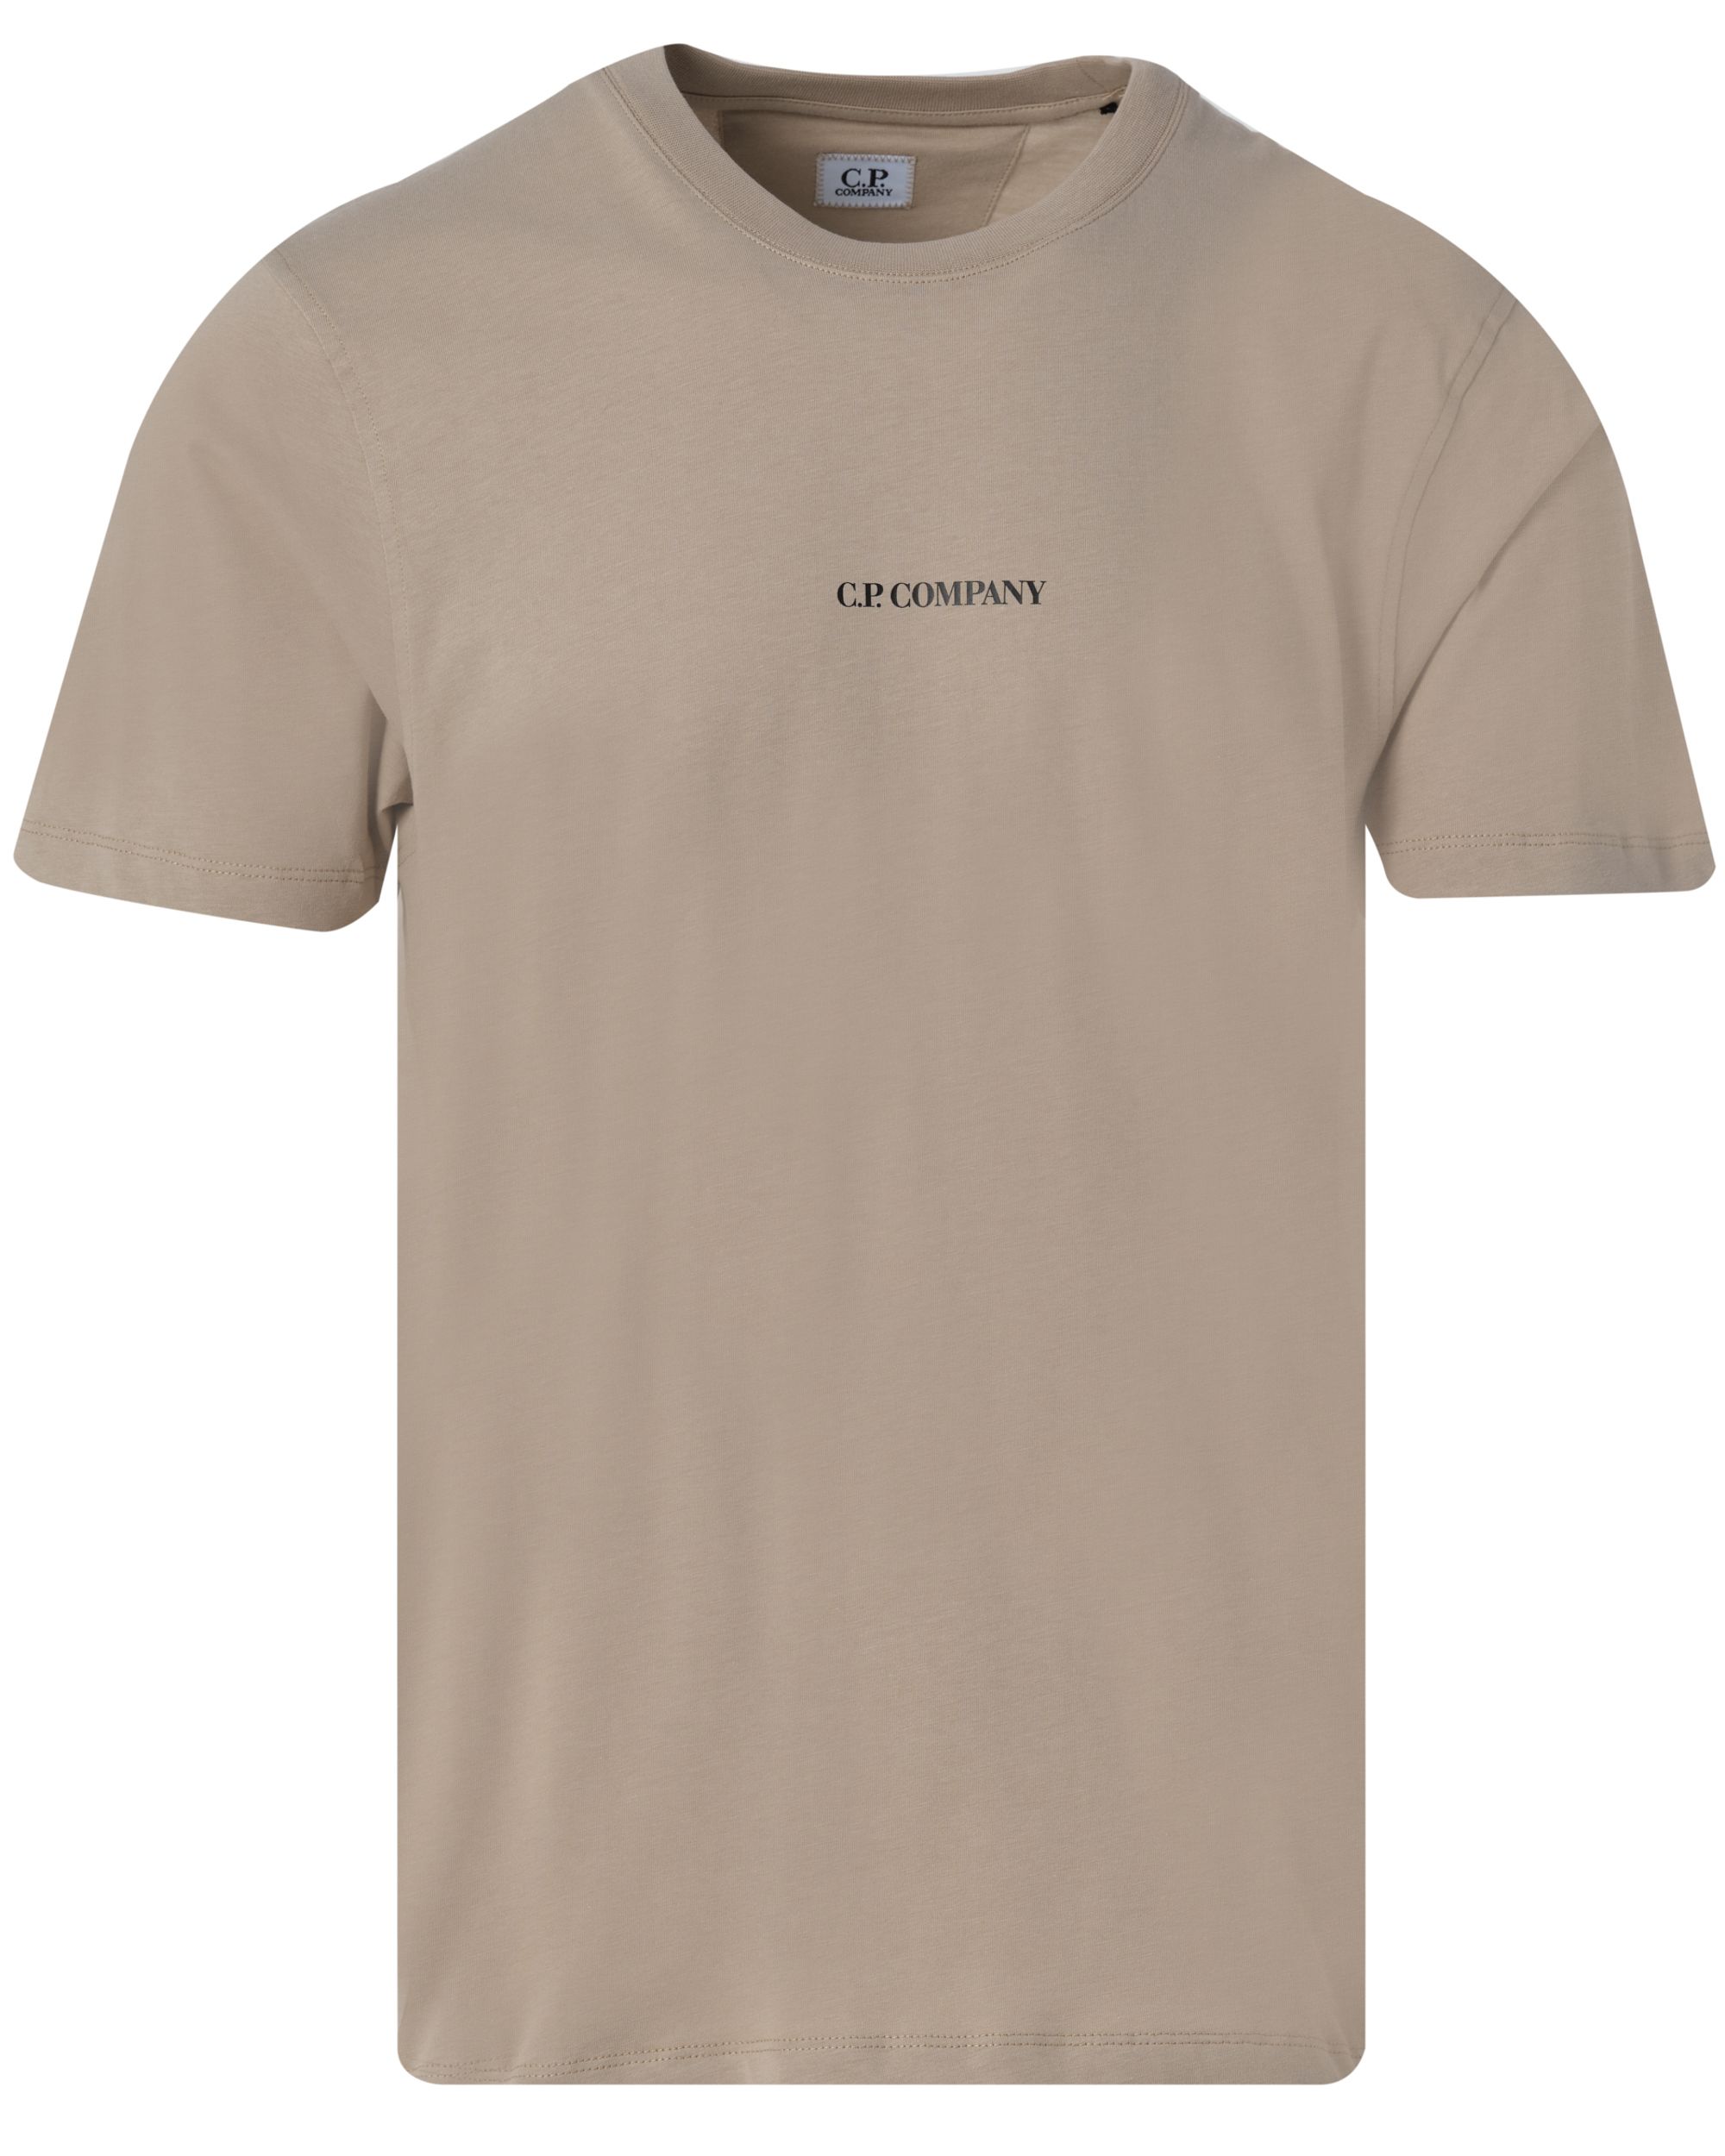 C.P Company T-shirt KM Khaki 082466-001-L